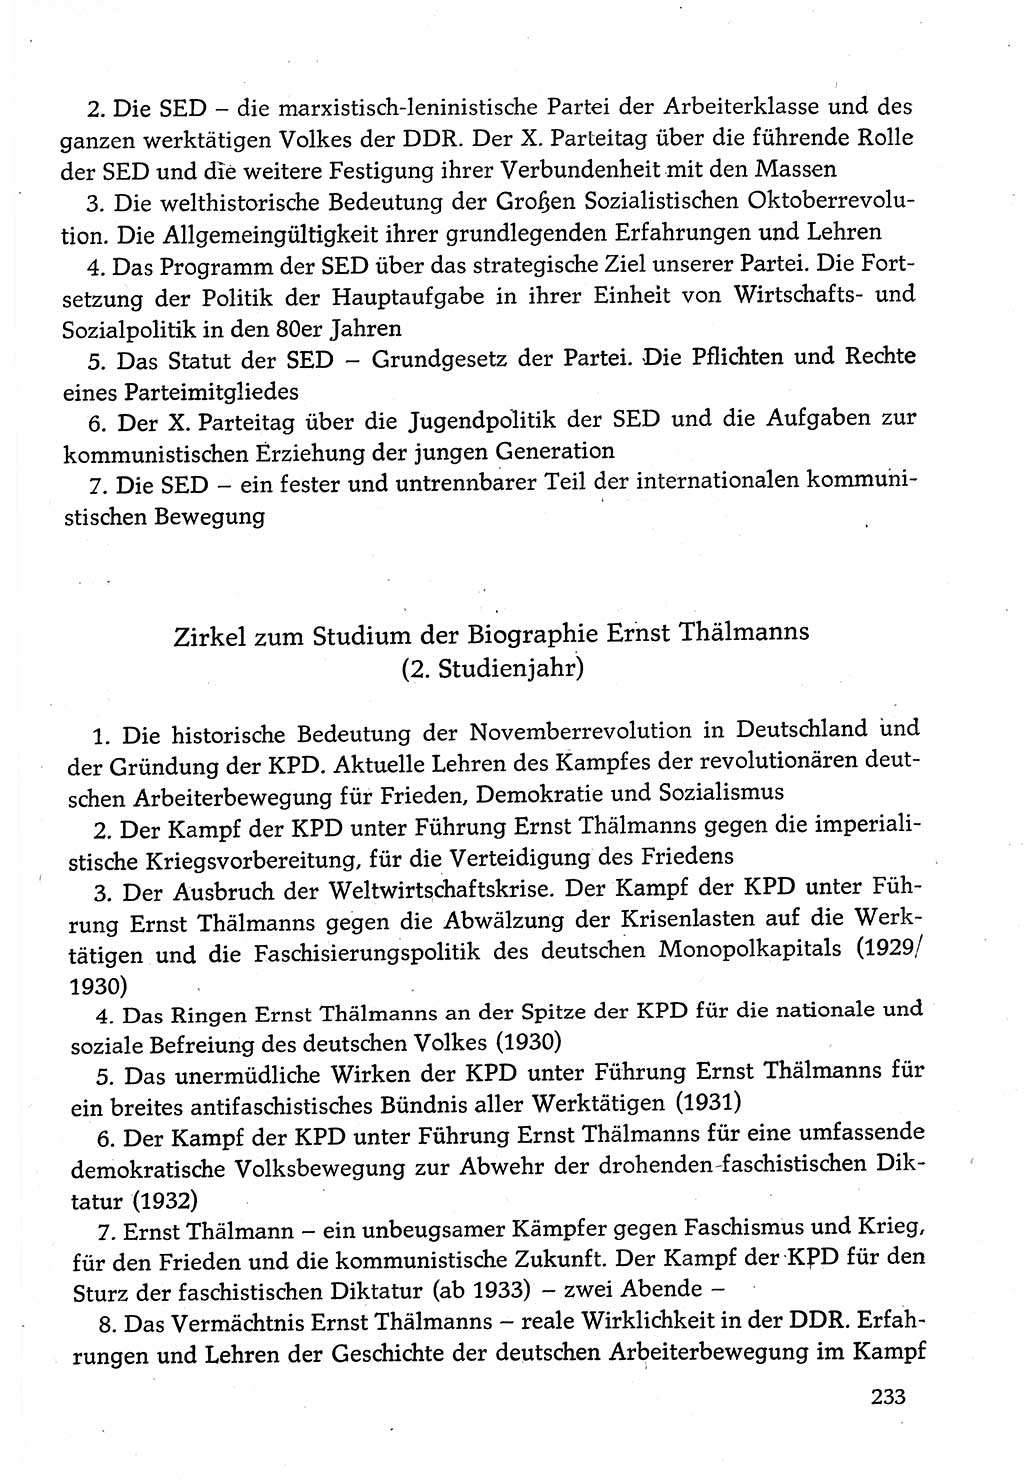 Dokumente der Sozialistischen Einheitspartei Deutschlands (SED) [Deutsche Demokratische Republik (DDR)] 1982-1983, Seite 233 (Dok. SED DDR 1982-1983, S. 233)